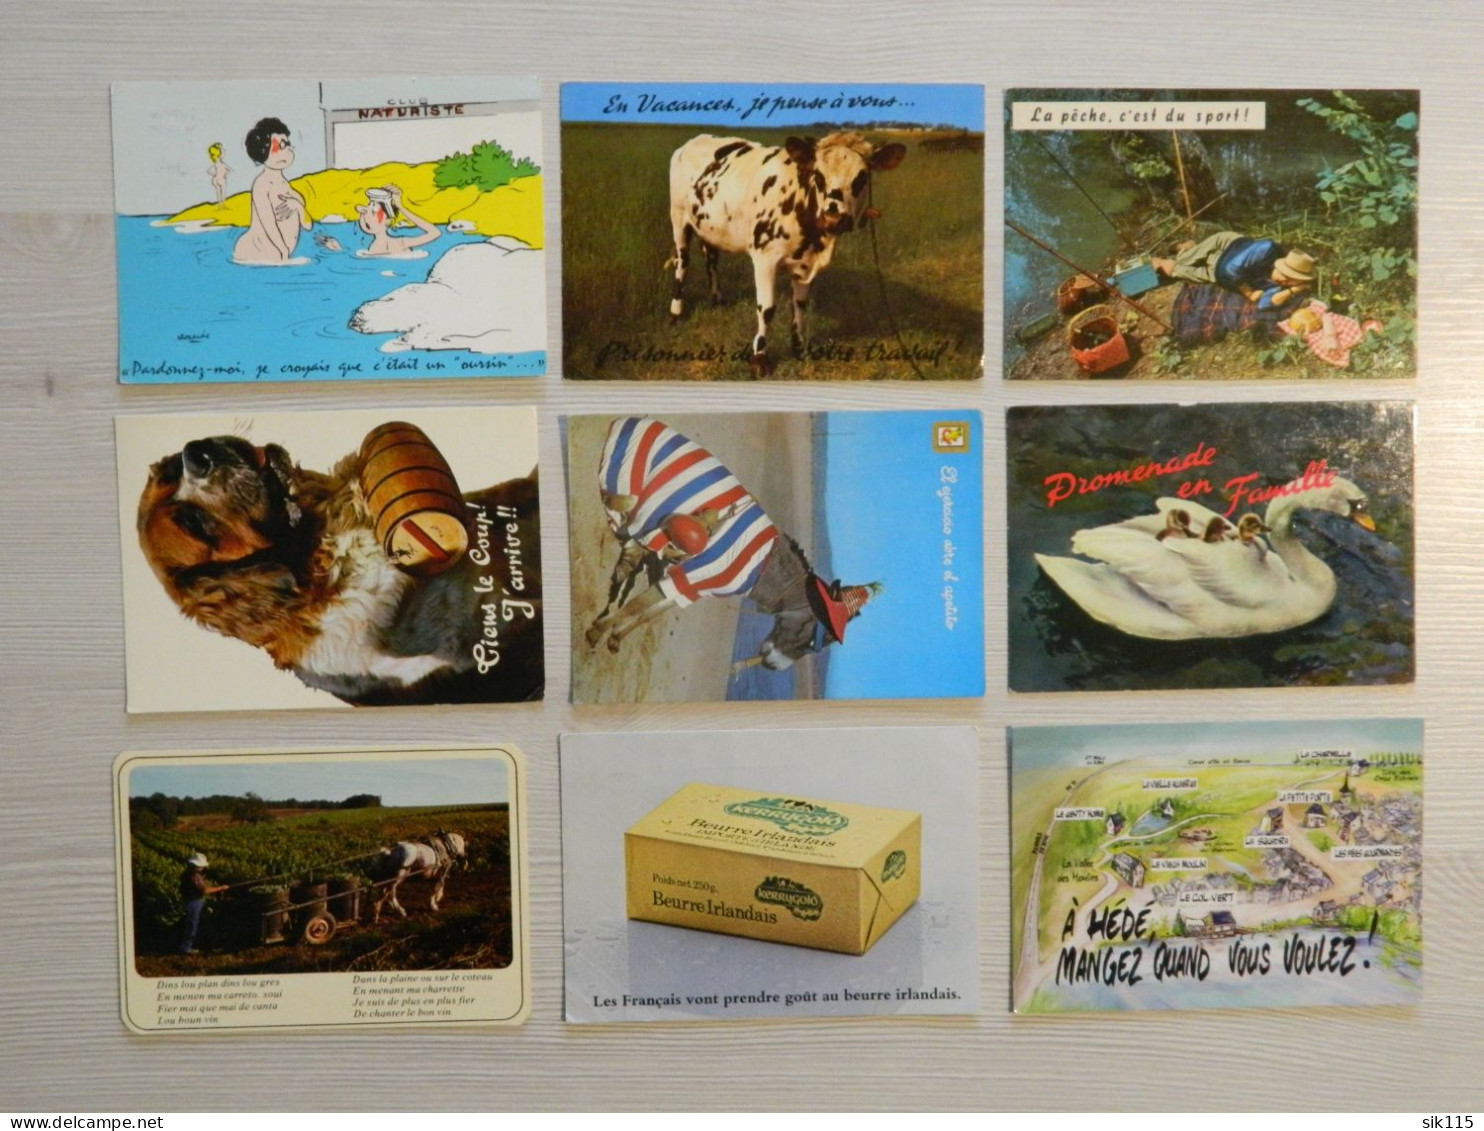 Gros LOT 4,8 Kg de Carte Postale FRANCE Belgique monde timbre cachet humour carte géographique animaux multivues